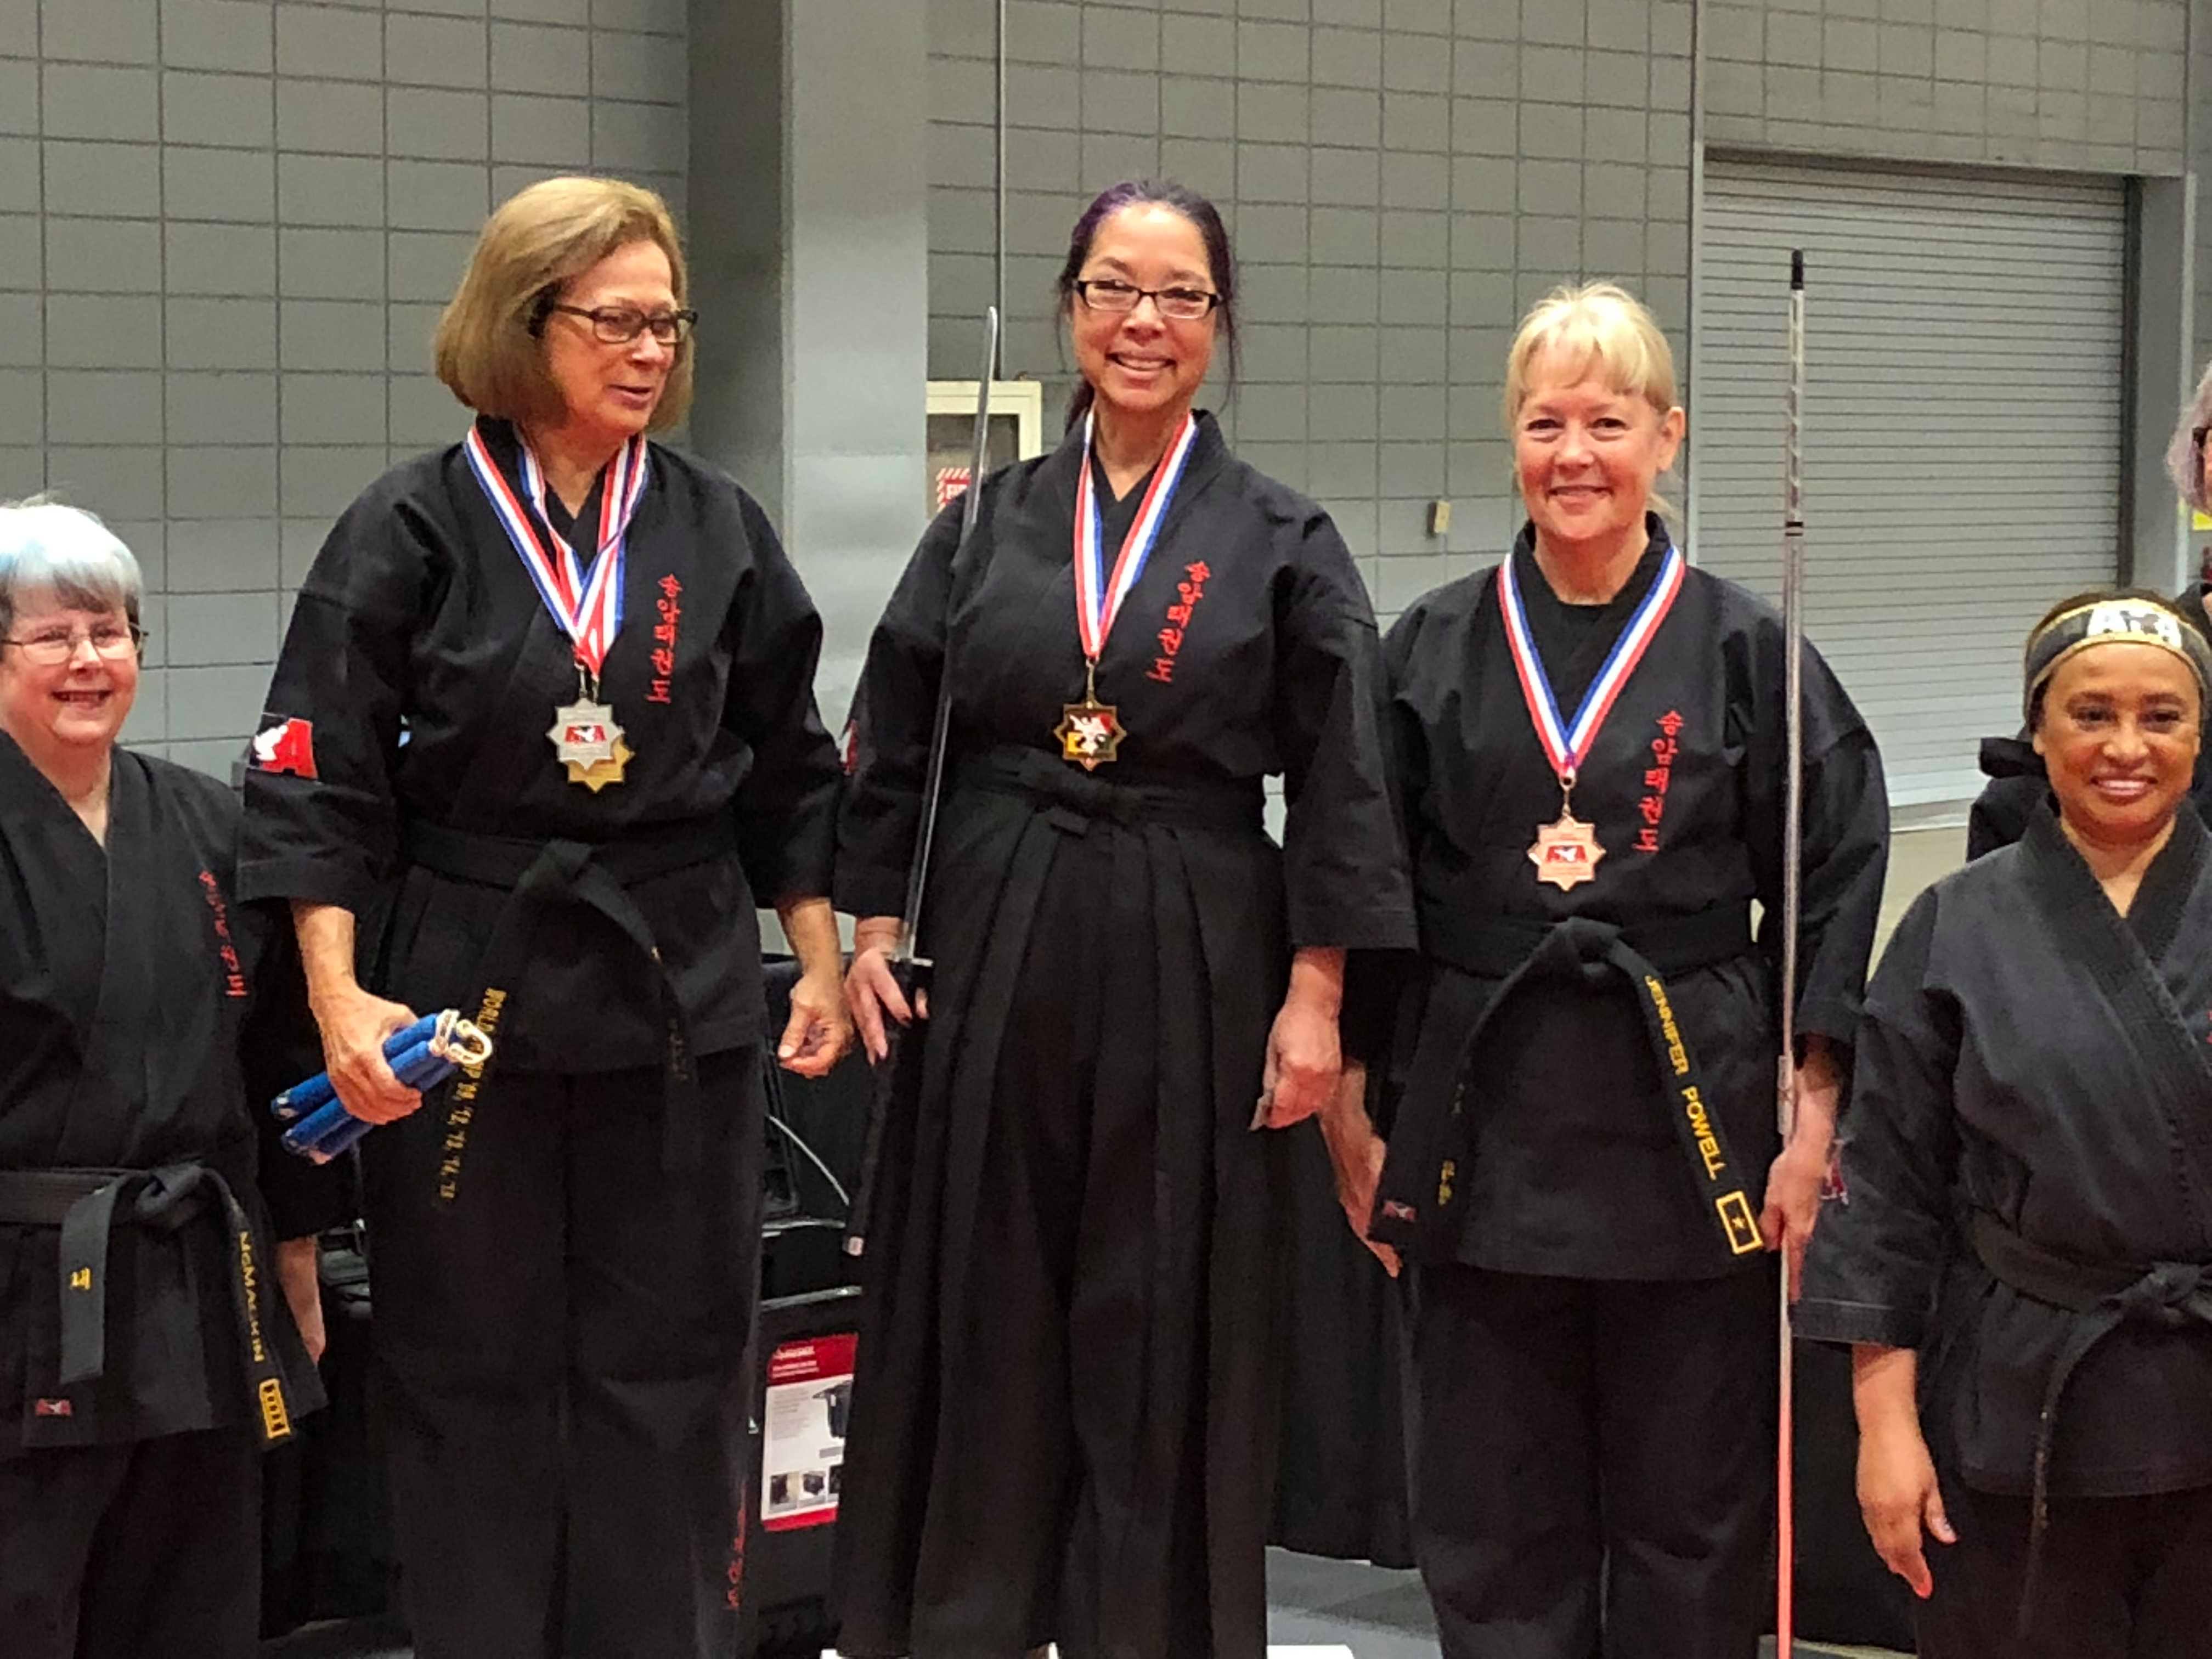 Bilyeu, McMackin, and Weir win World Taekwondo Championships